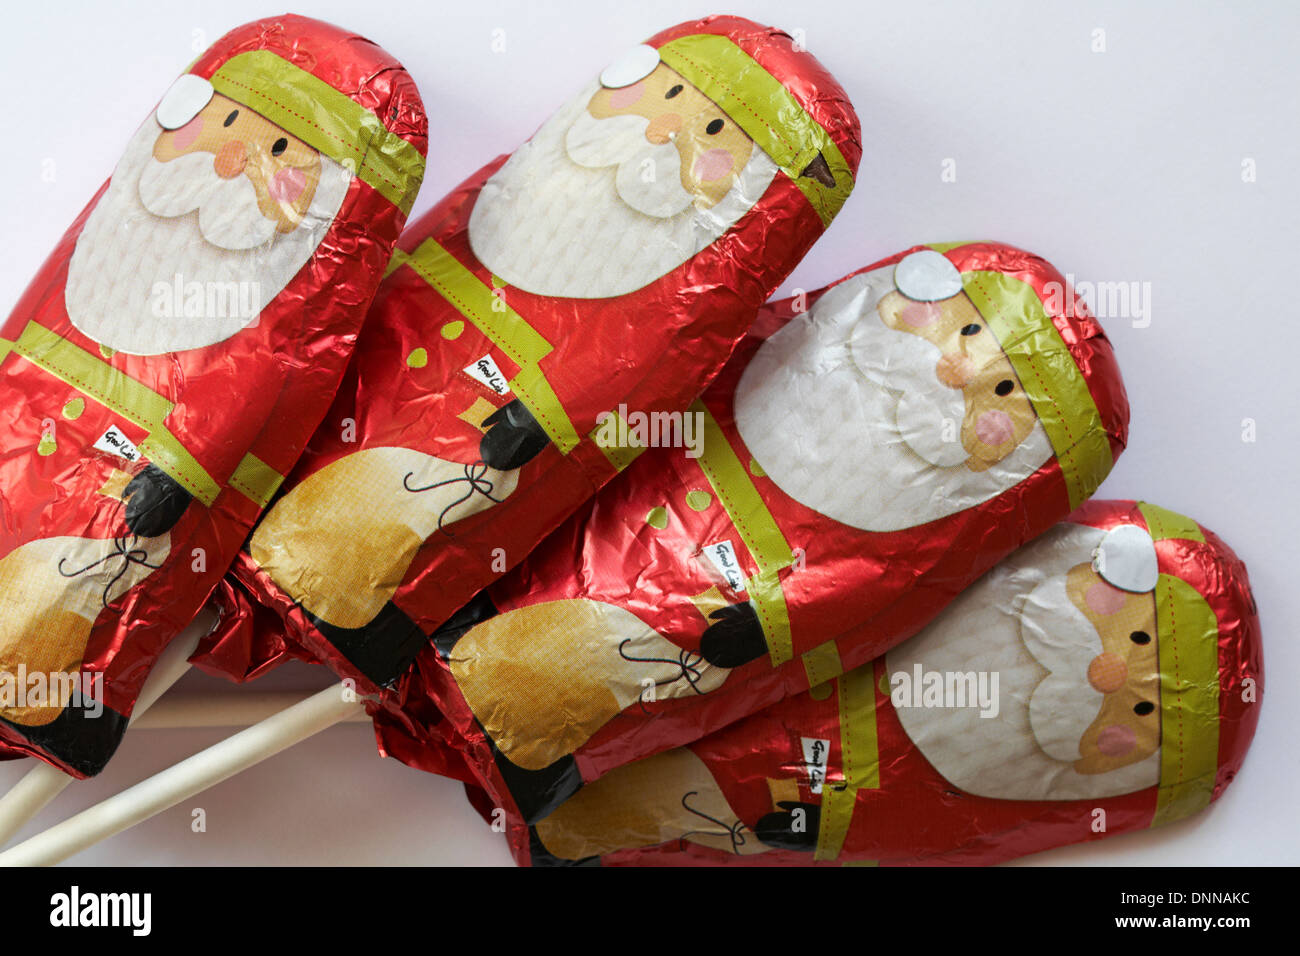 Chocolat au lait solide santas, Fatther, chocolat de Noël, sucette lollies, prêt pour Noël sur fond blanc Banque D'Images